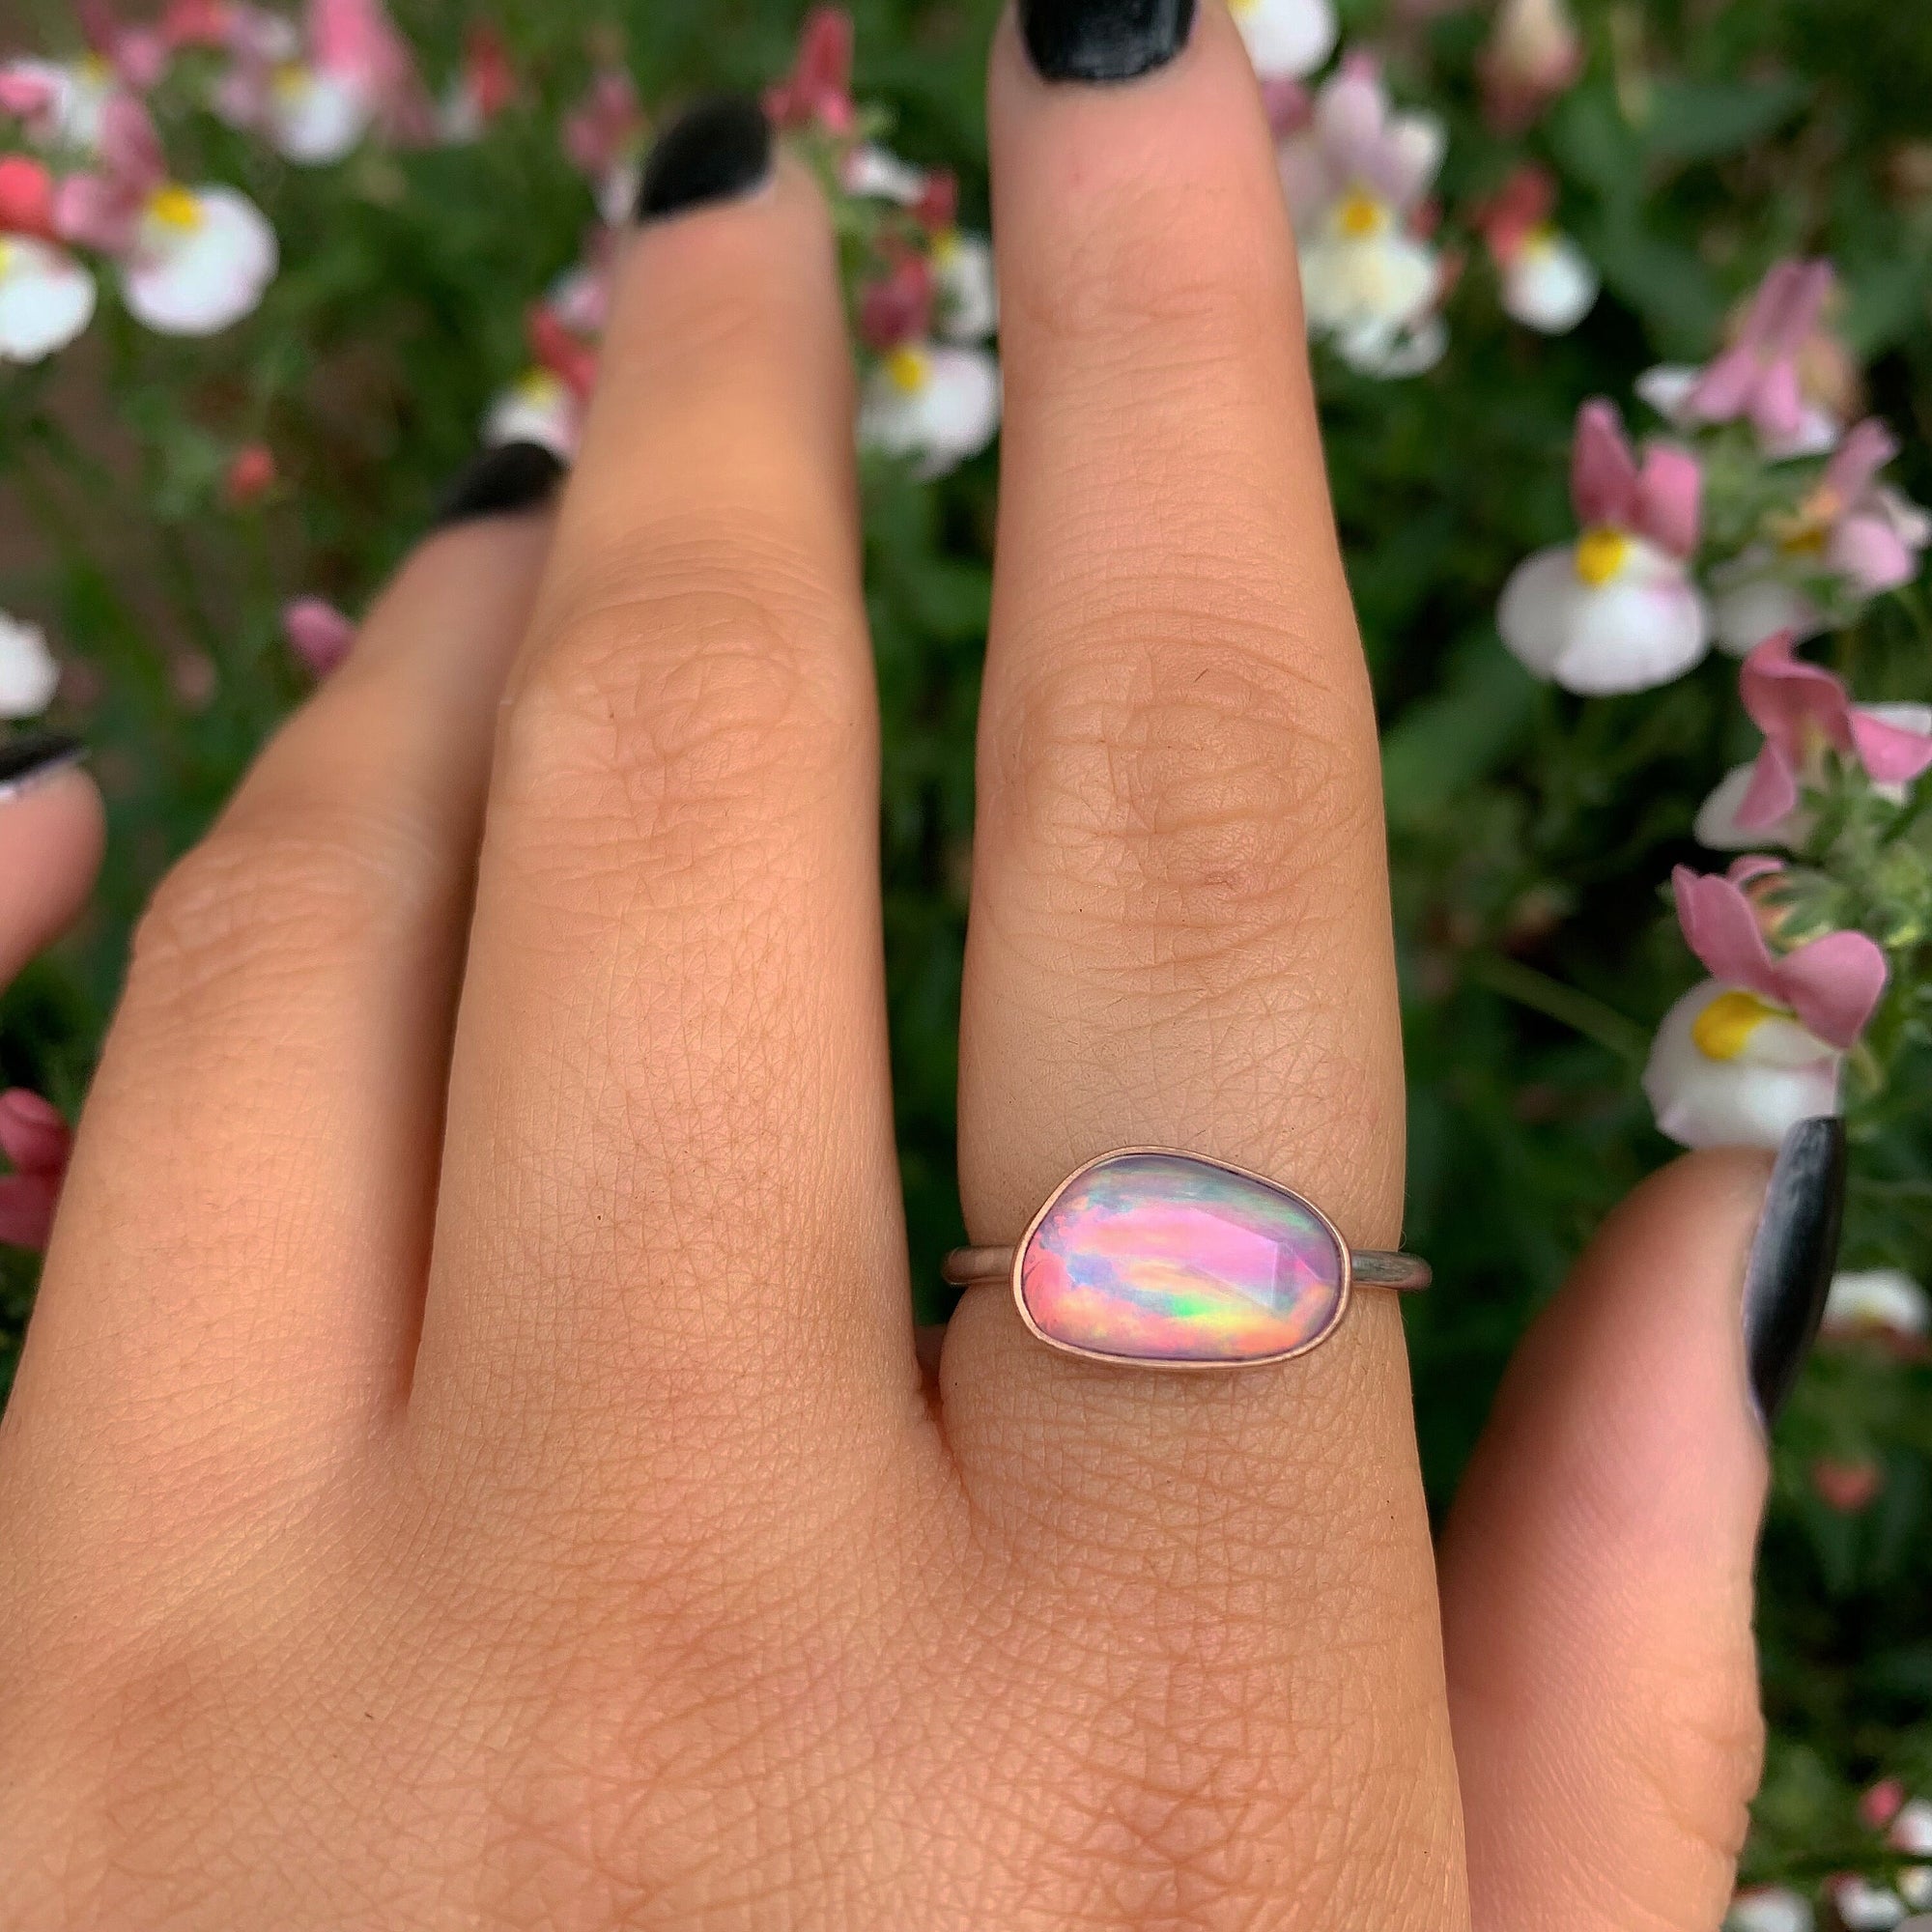 Rose Cut Clear Quartz & Aurora Opal Ring - Size 7 1/2 